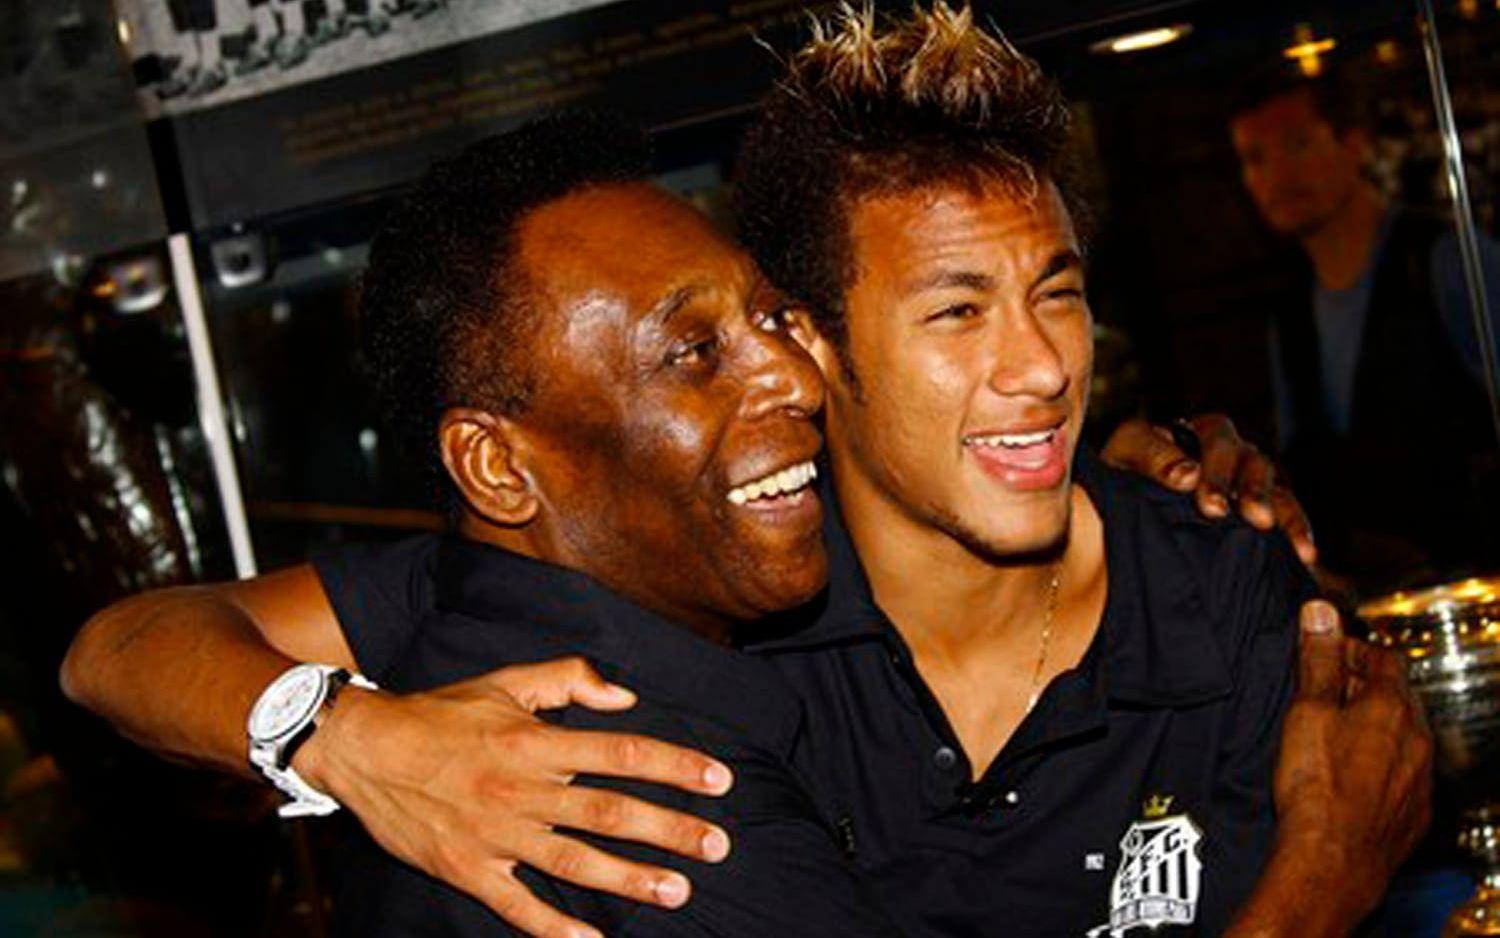 Pelé arvtagare inom brasiliansk fotboll anses av många vara Neymar, som är fostrad i Pelés Santos.